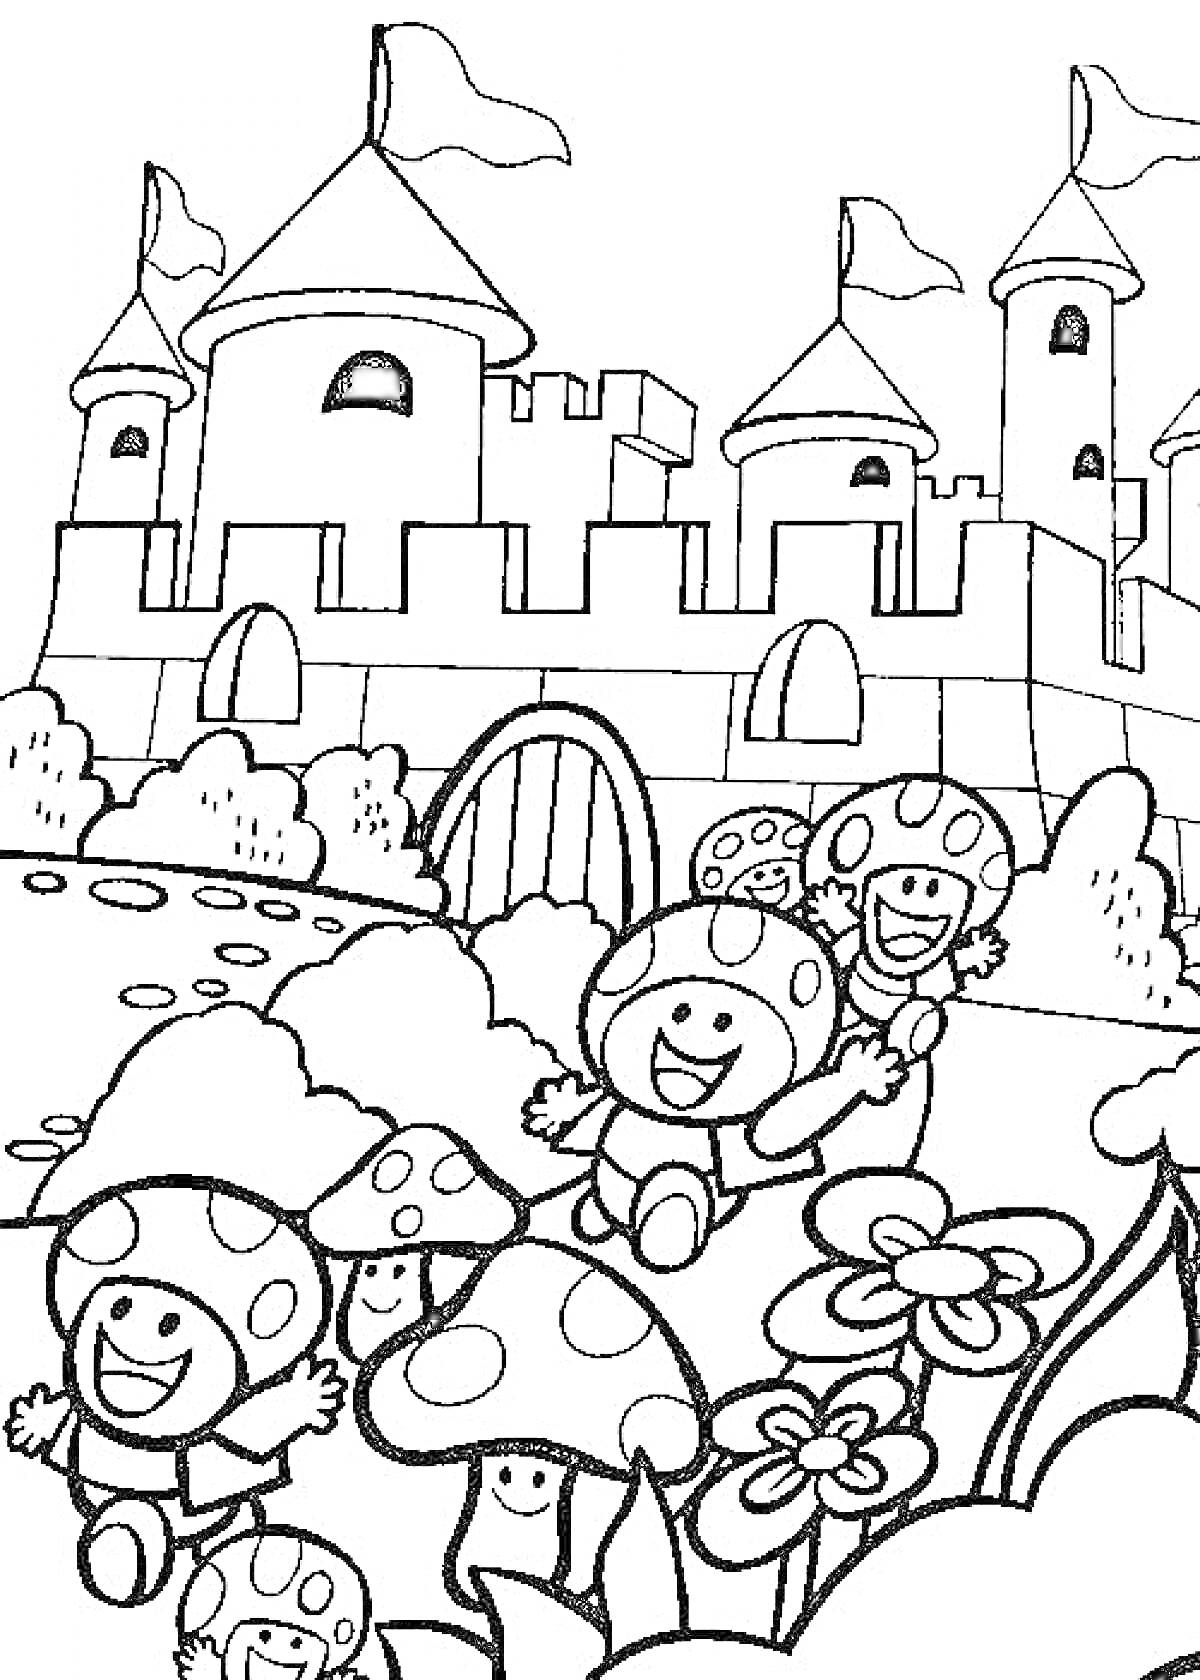 Традиционные персонажи Марио - грибы Тод и замок, грибные человечки на переднем плане на фоне замка